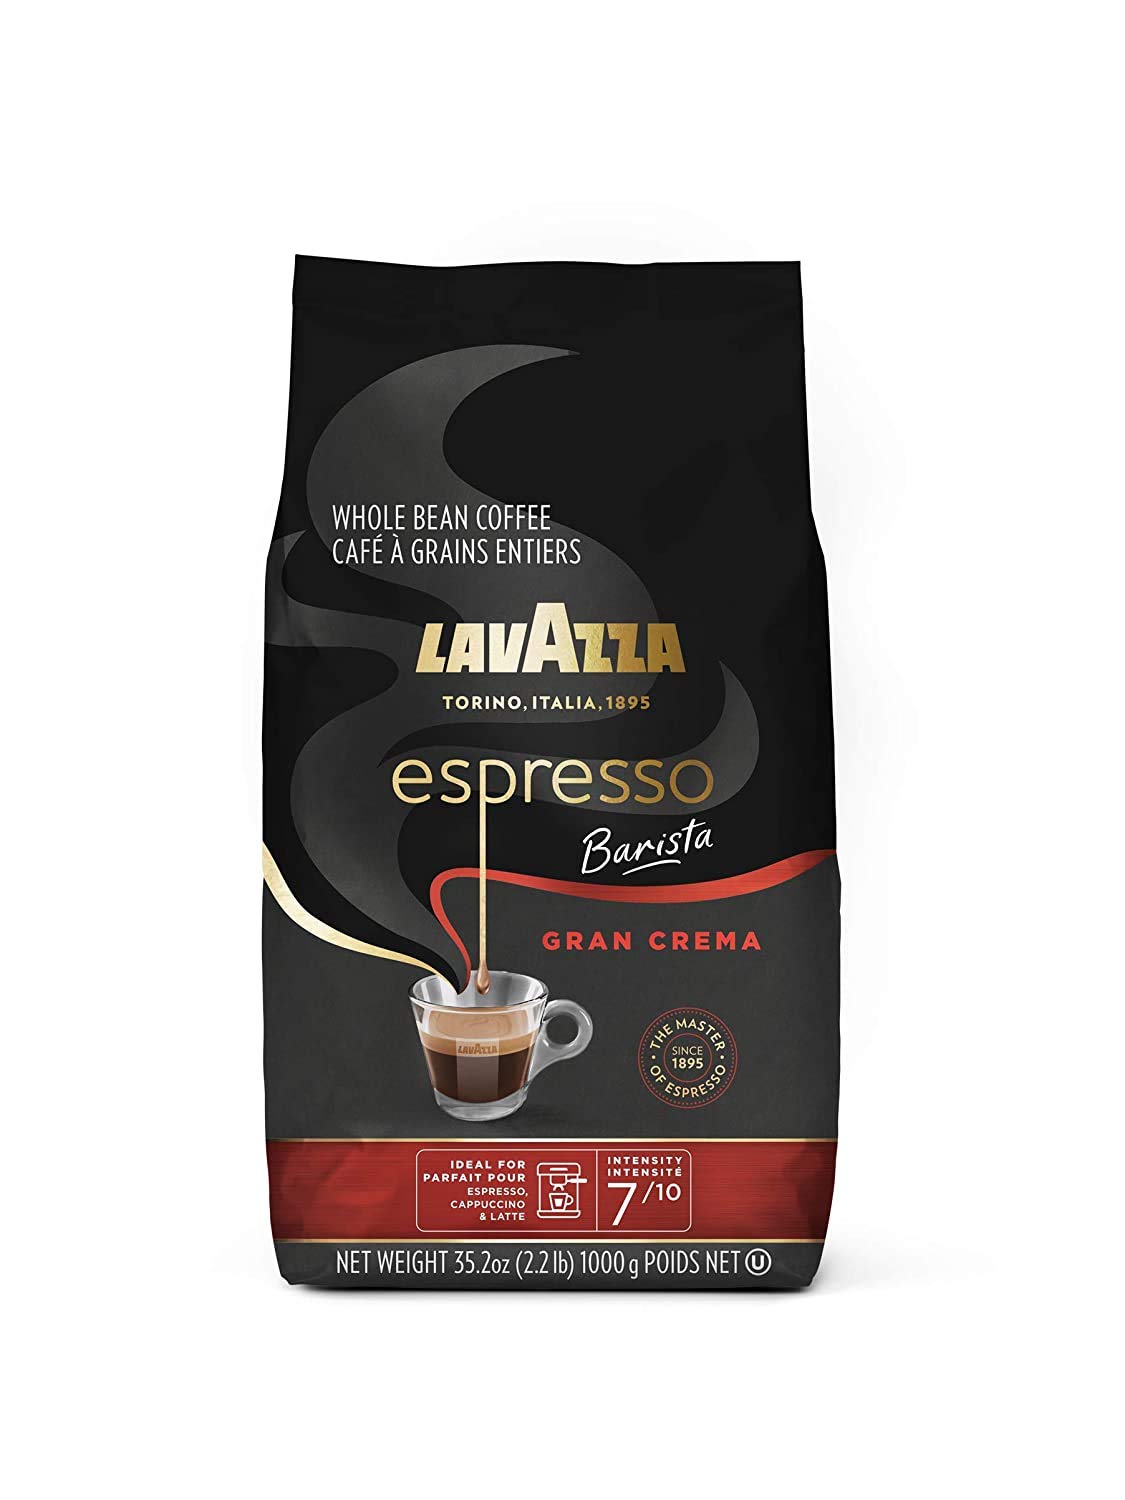 2.2-Lb Lavazza Espresso Barista Gran Crema Whole Bean Coffee (Medium Roast) $10.44 w/ S&S + Free Shipping w/ Prime or on $25+